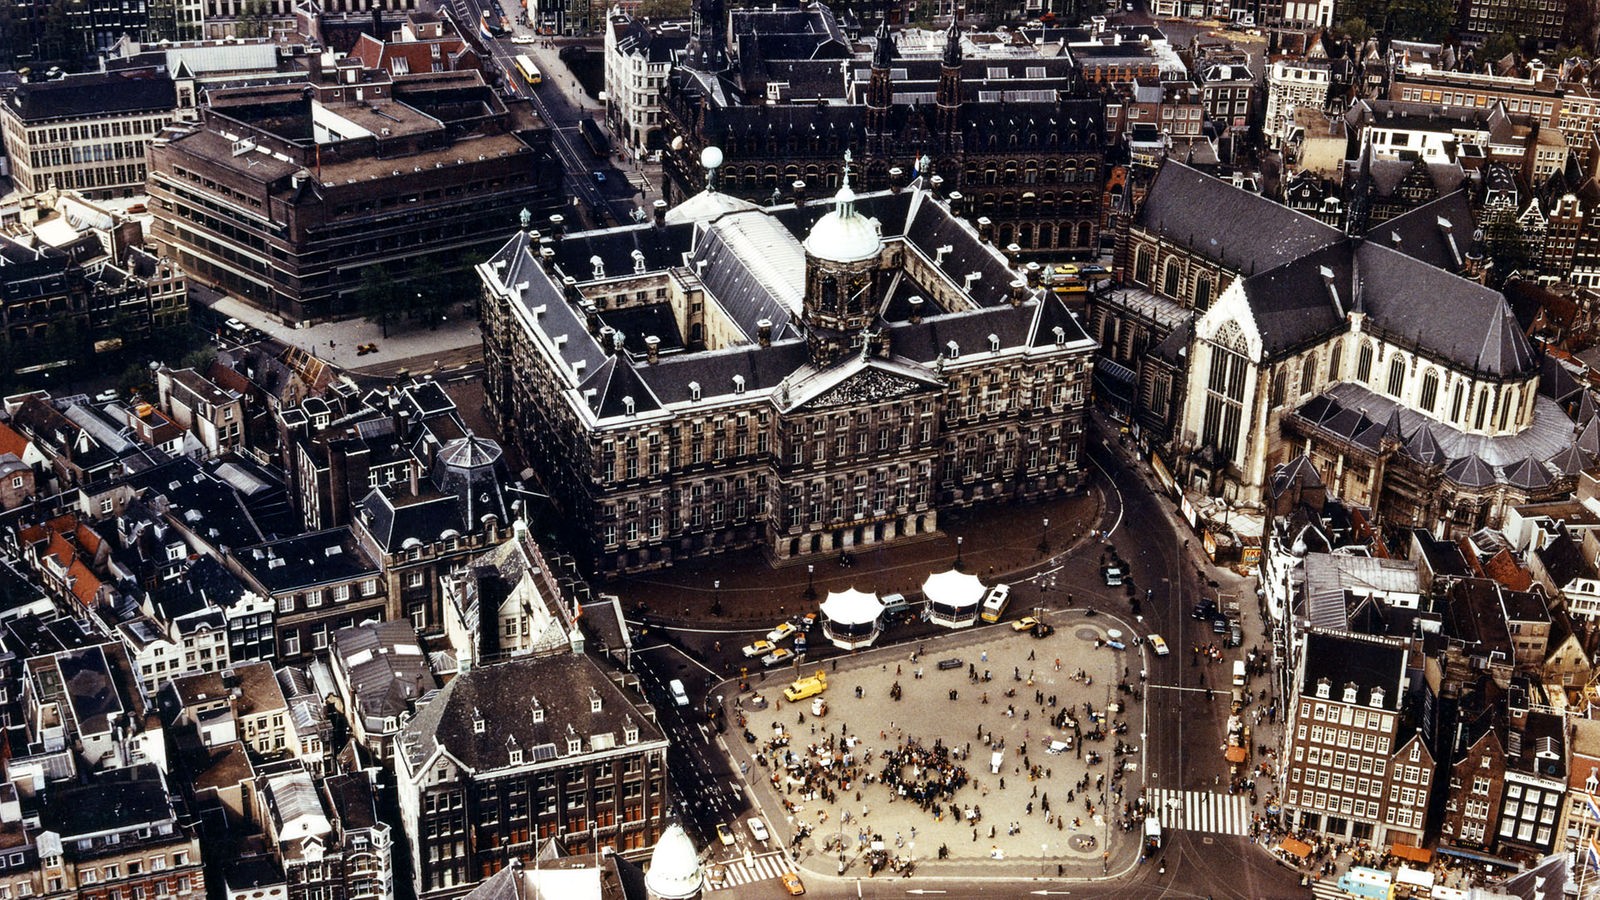 Das Bild, eine Luftaufnahme, zeigt den historischen Marktplatz von Amsterdam mit dem Königlichen Palast. Auf dem Platz sind viele Menschen zu erkennen